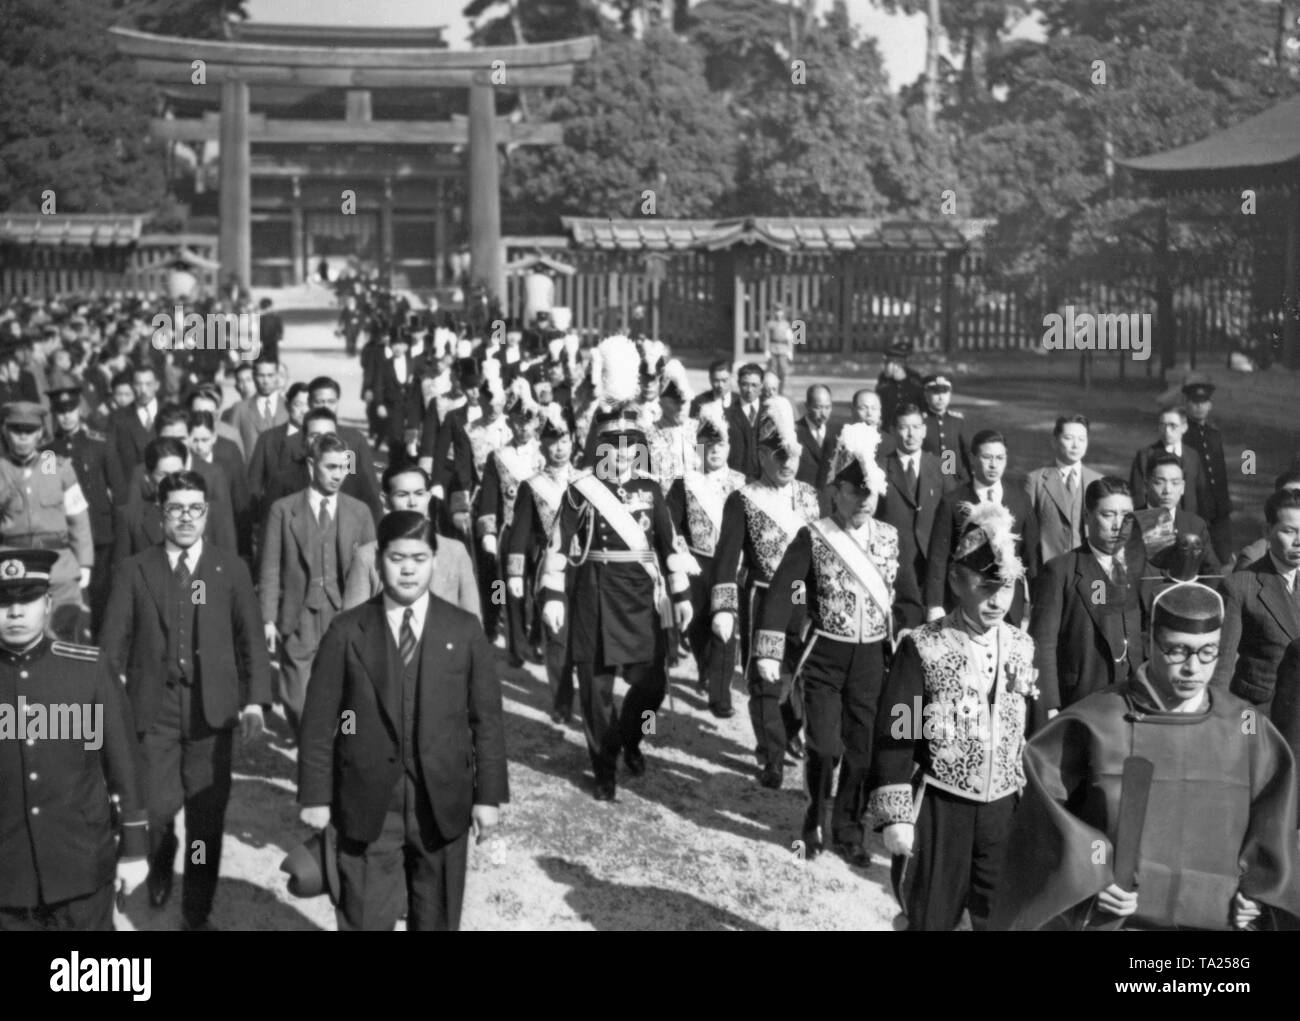 Eine Gruppe von Ministern und anderen hochrangigen japanischen Beamten, geführt von einem Priester, der Meiji-schrein in Tokyo nach dort halten eine Zeremonie. Stockfoto